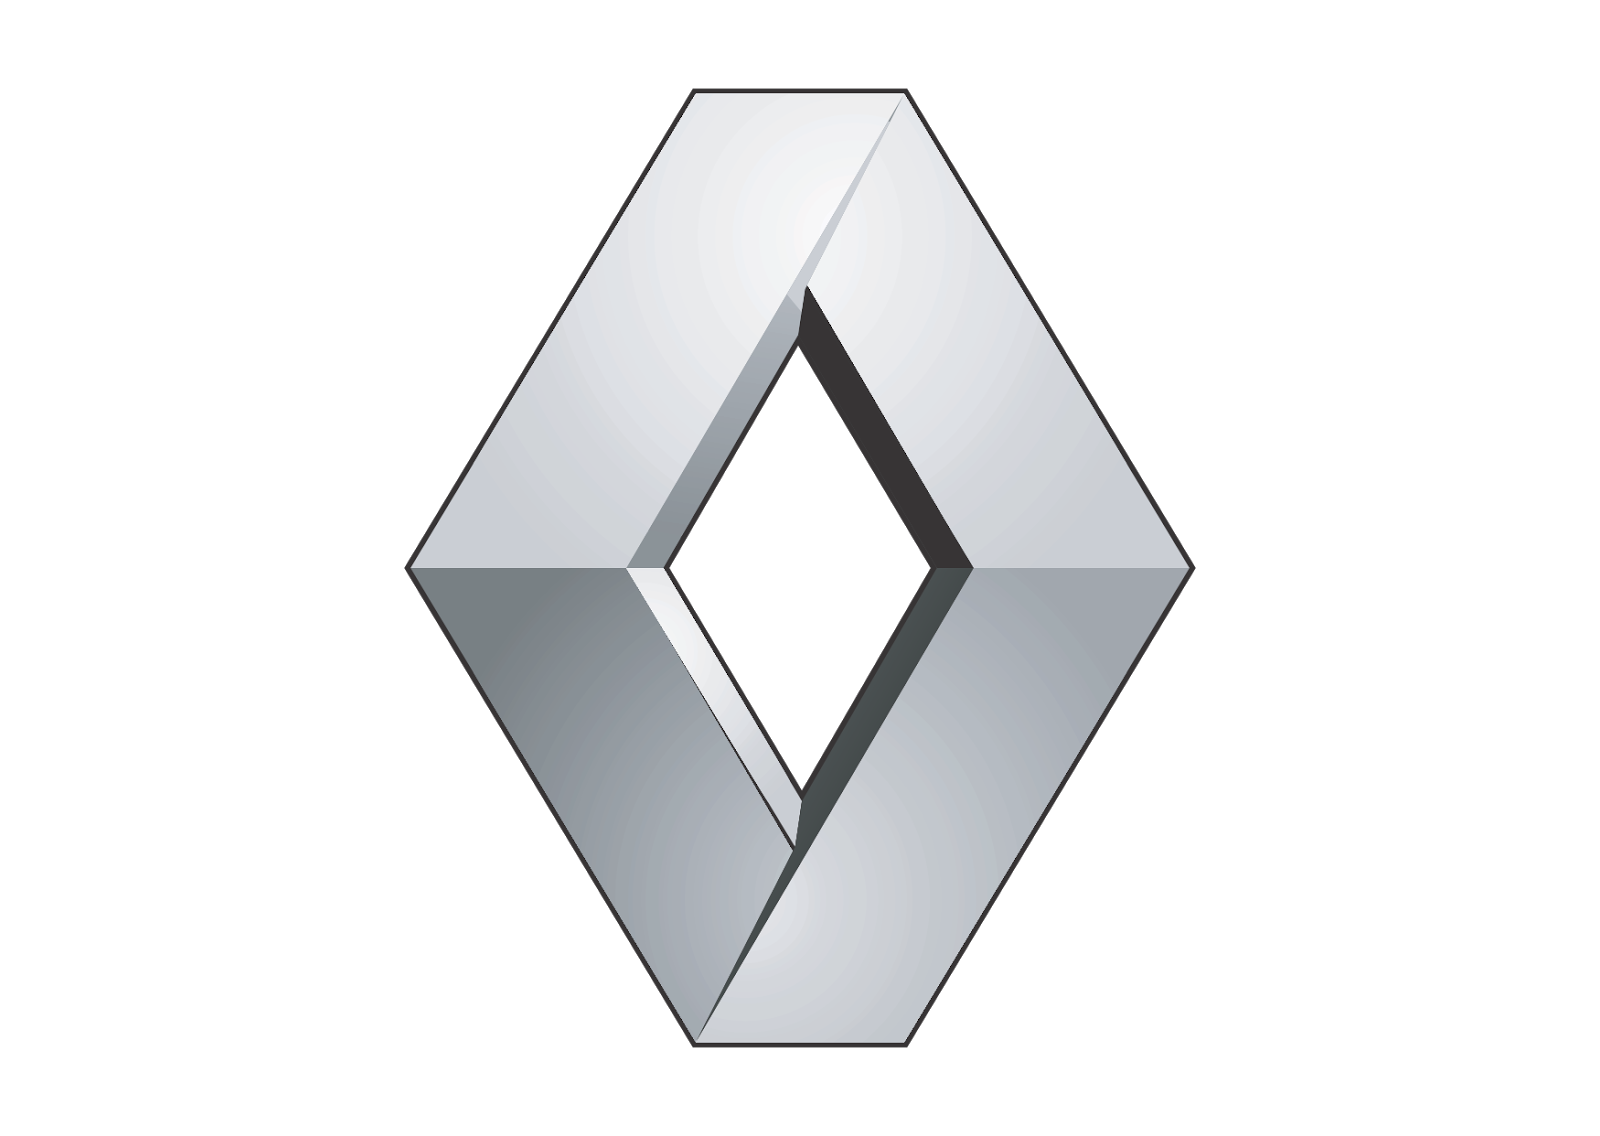 Logo of Renault